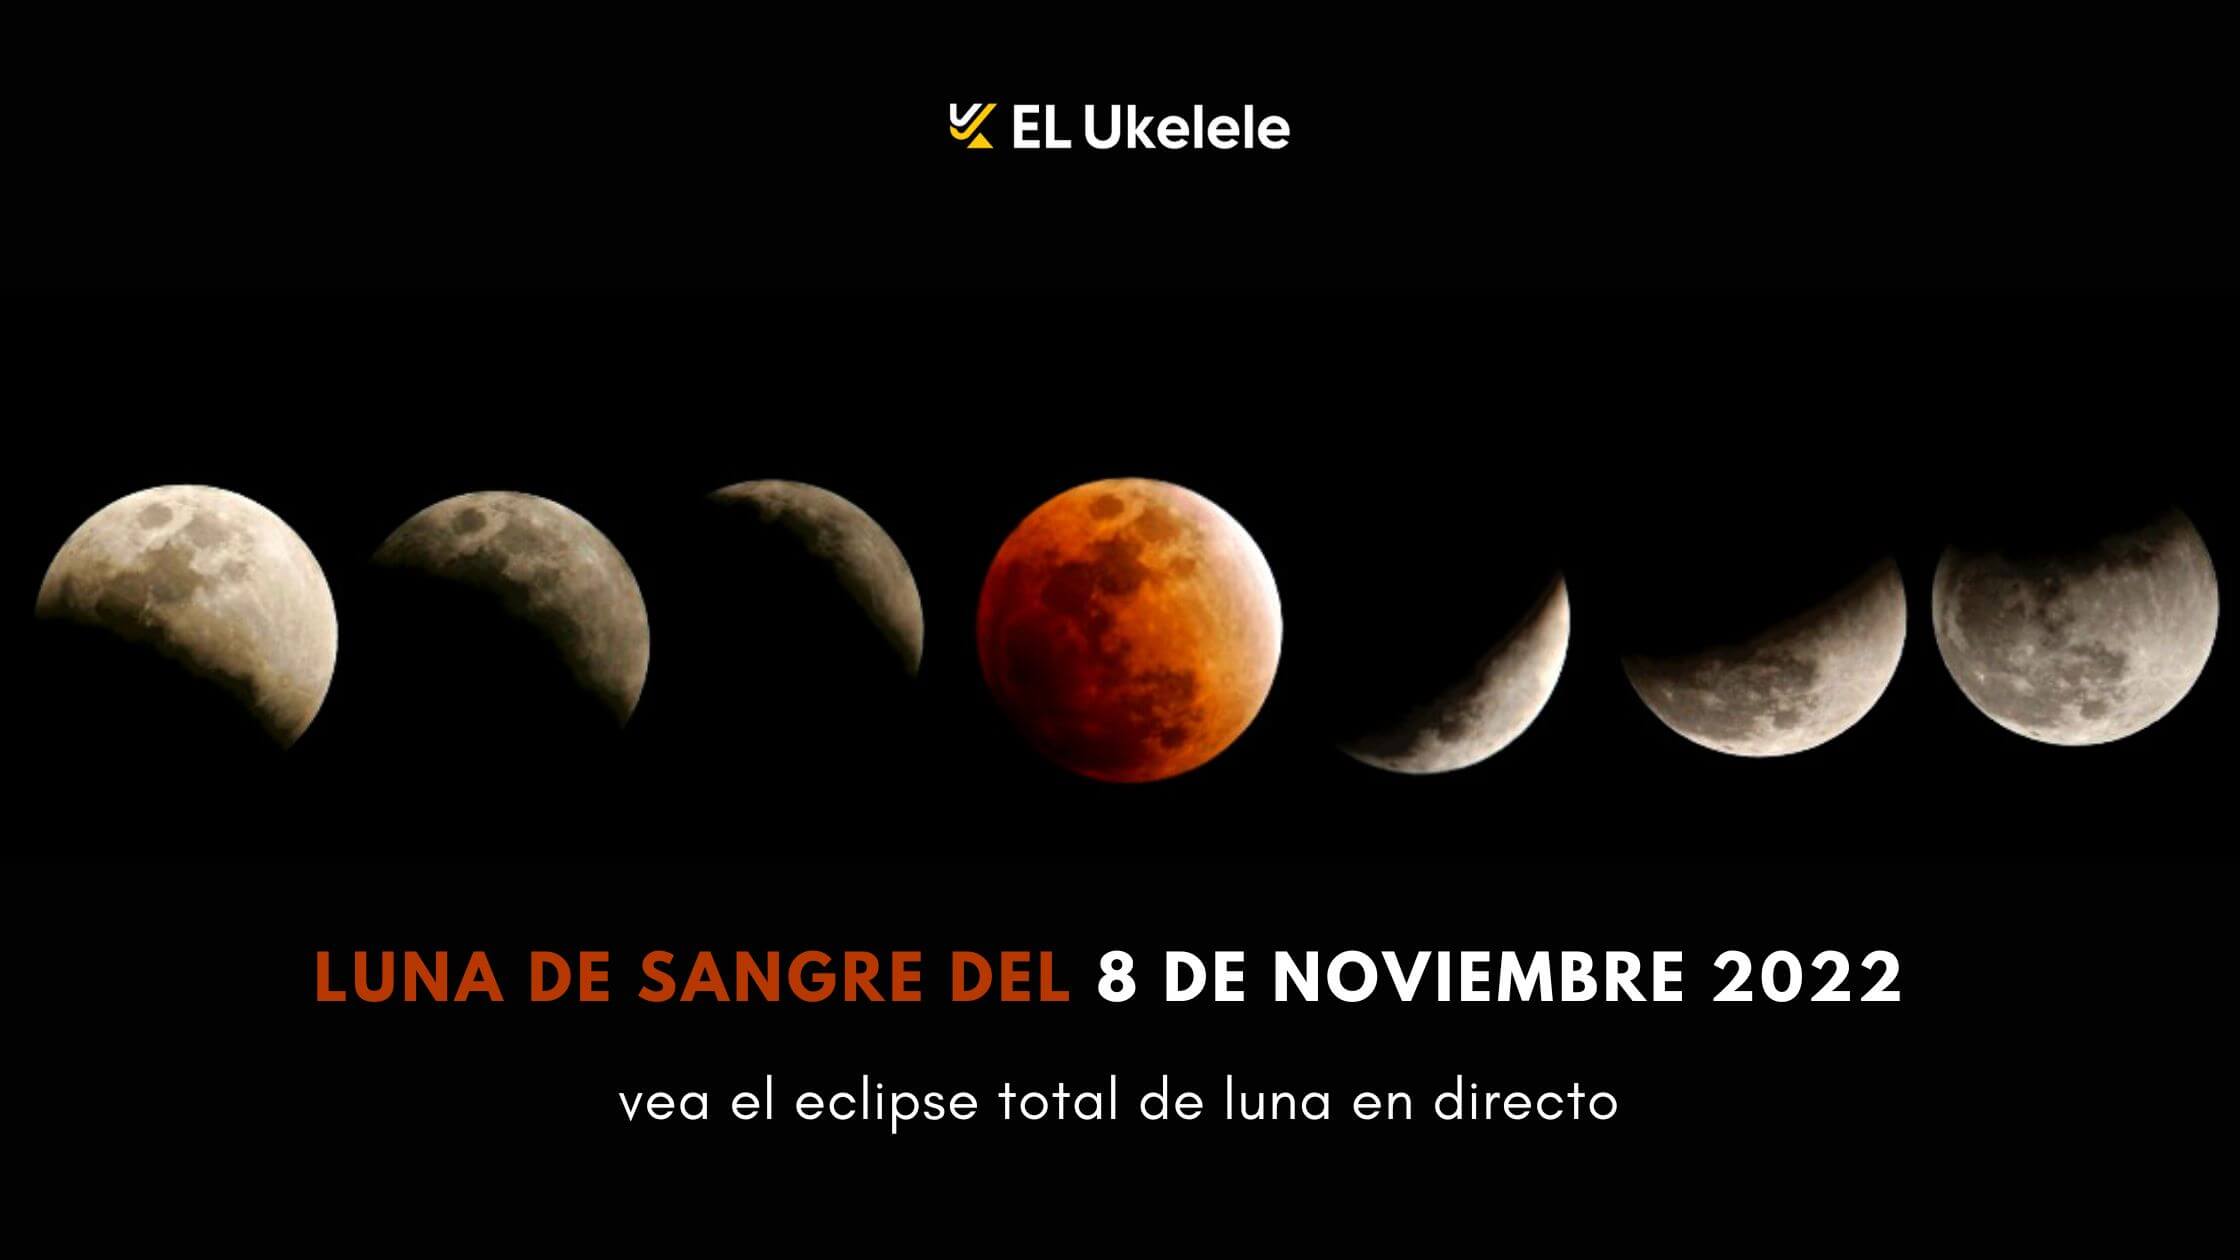 Luna de sangre del 8 de noviembre vea el eclipse total de luna en directo 3